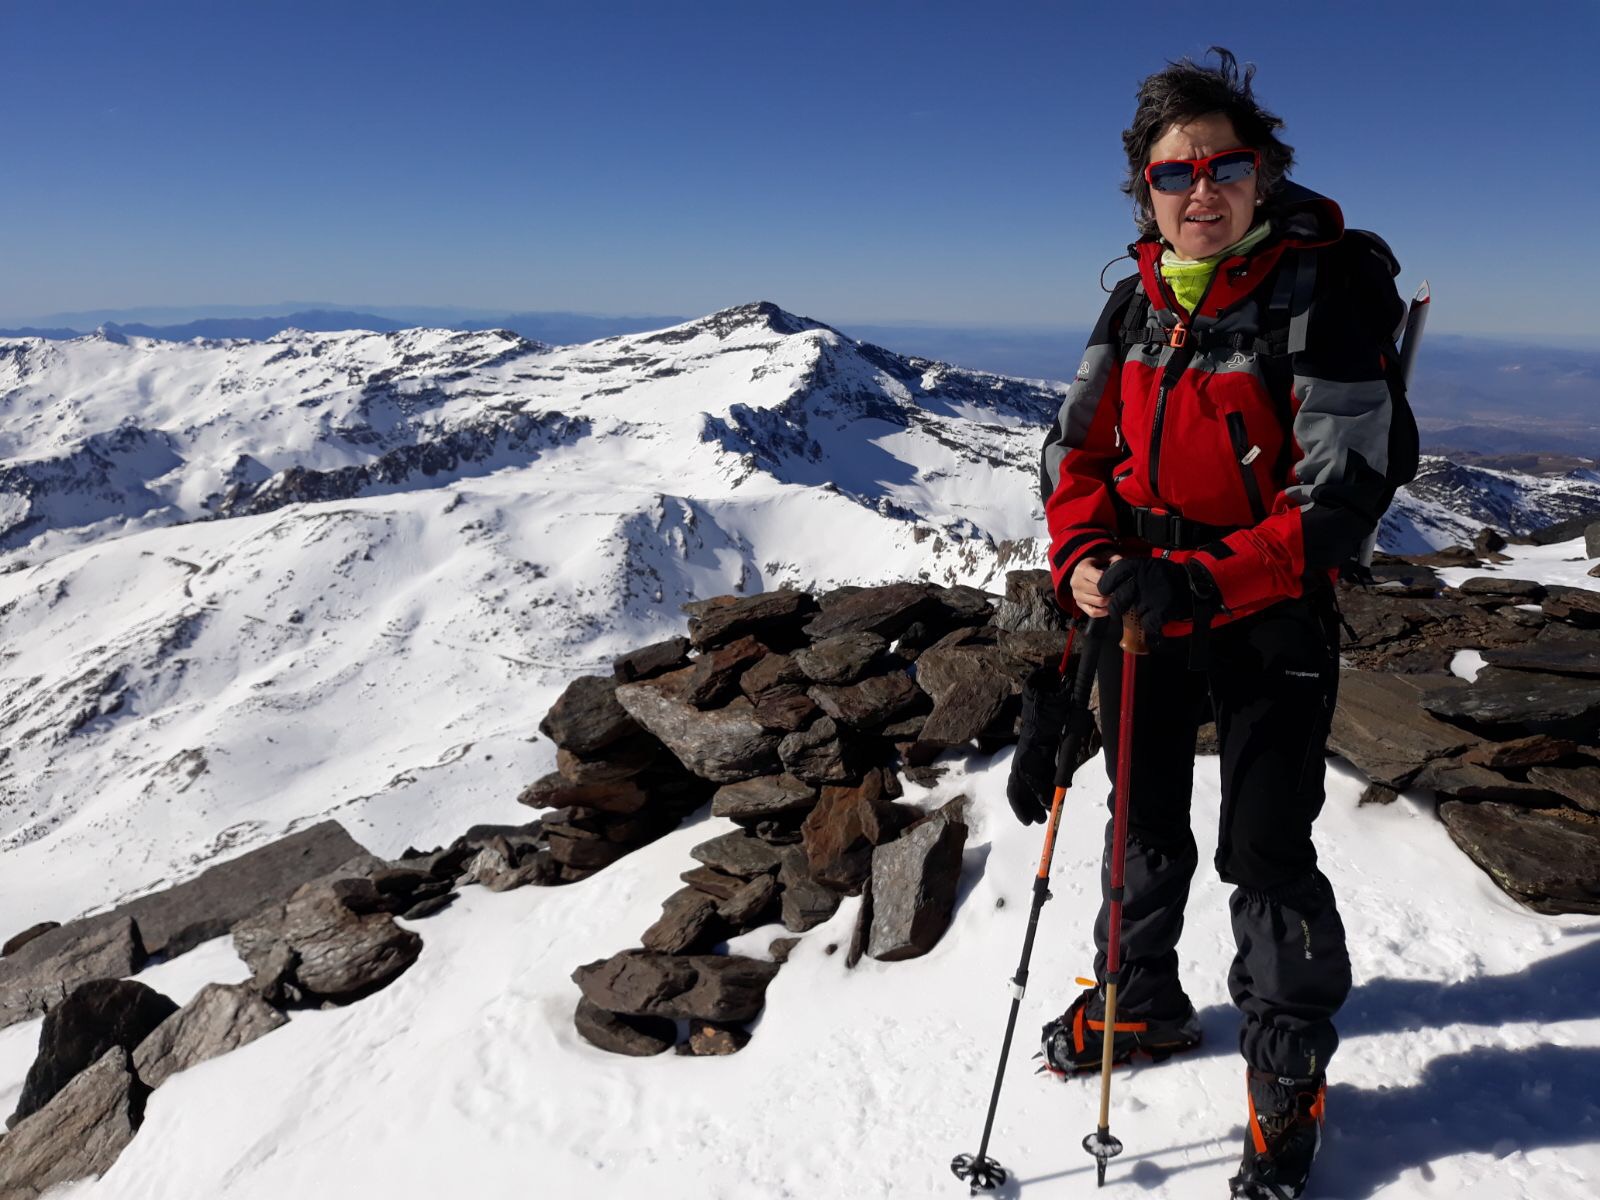 Laura está en la cima del Mulhacén, en Sierra Nevada. A su alrededor amplias vistas de este macizo montañoso completamente nevado.